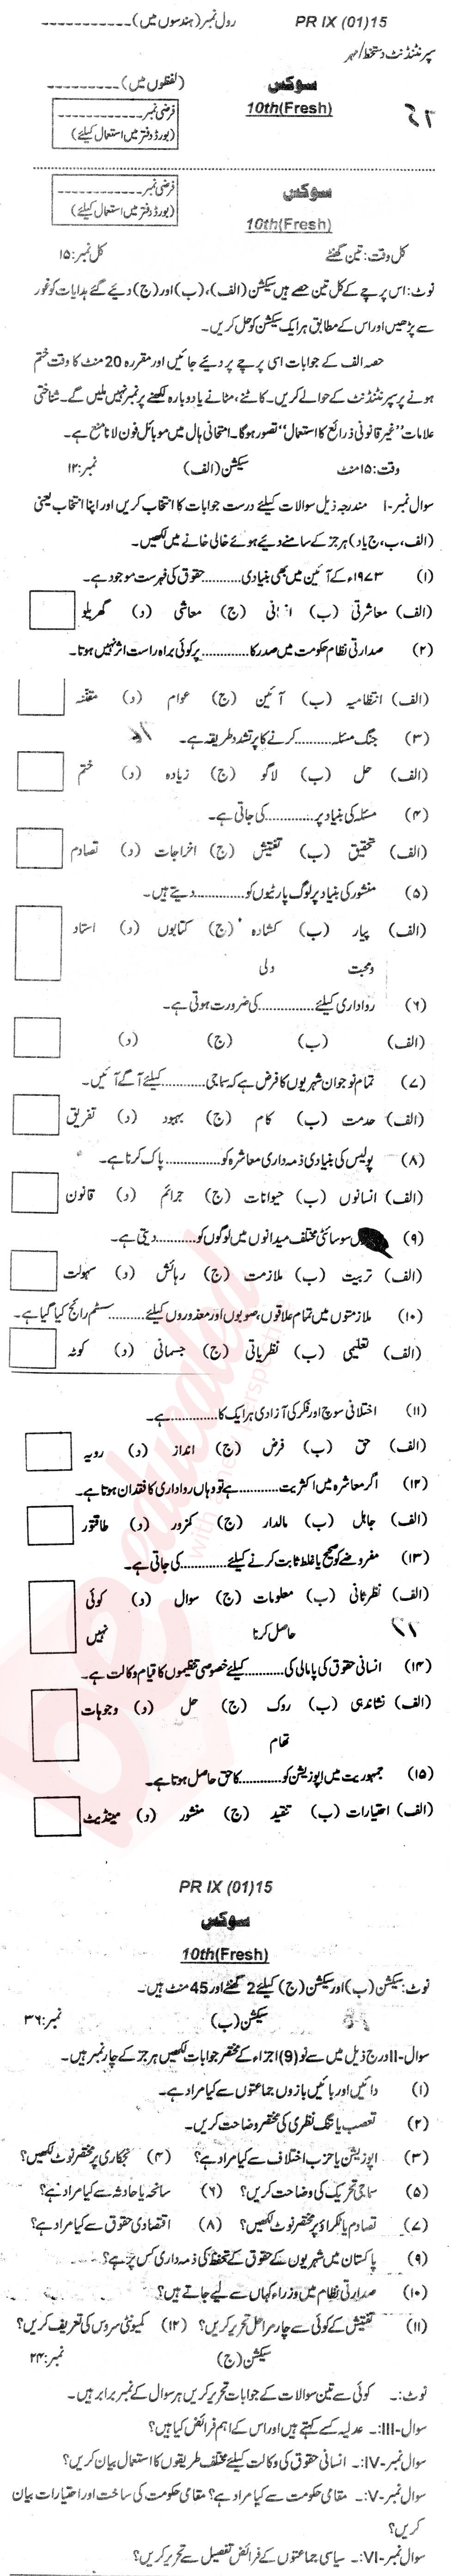 Civics 10th Urdu Medium Past Paper Group 1 BISE Bannu 2015